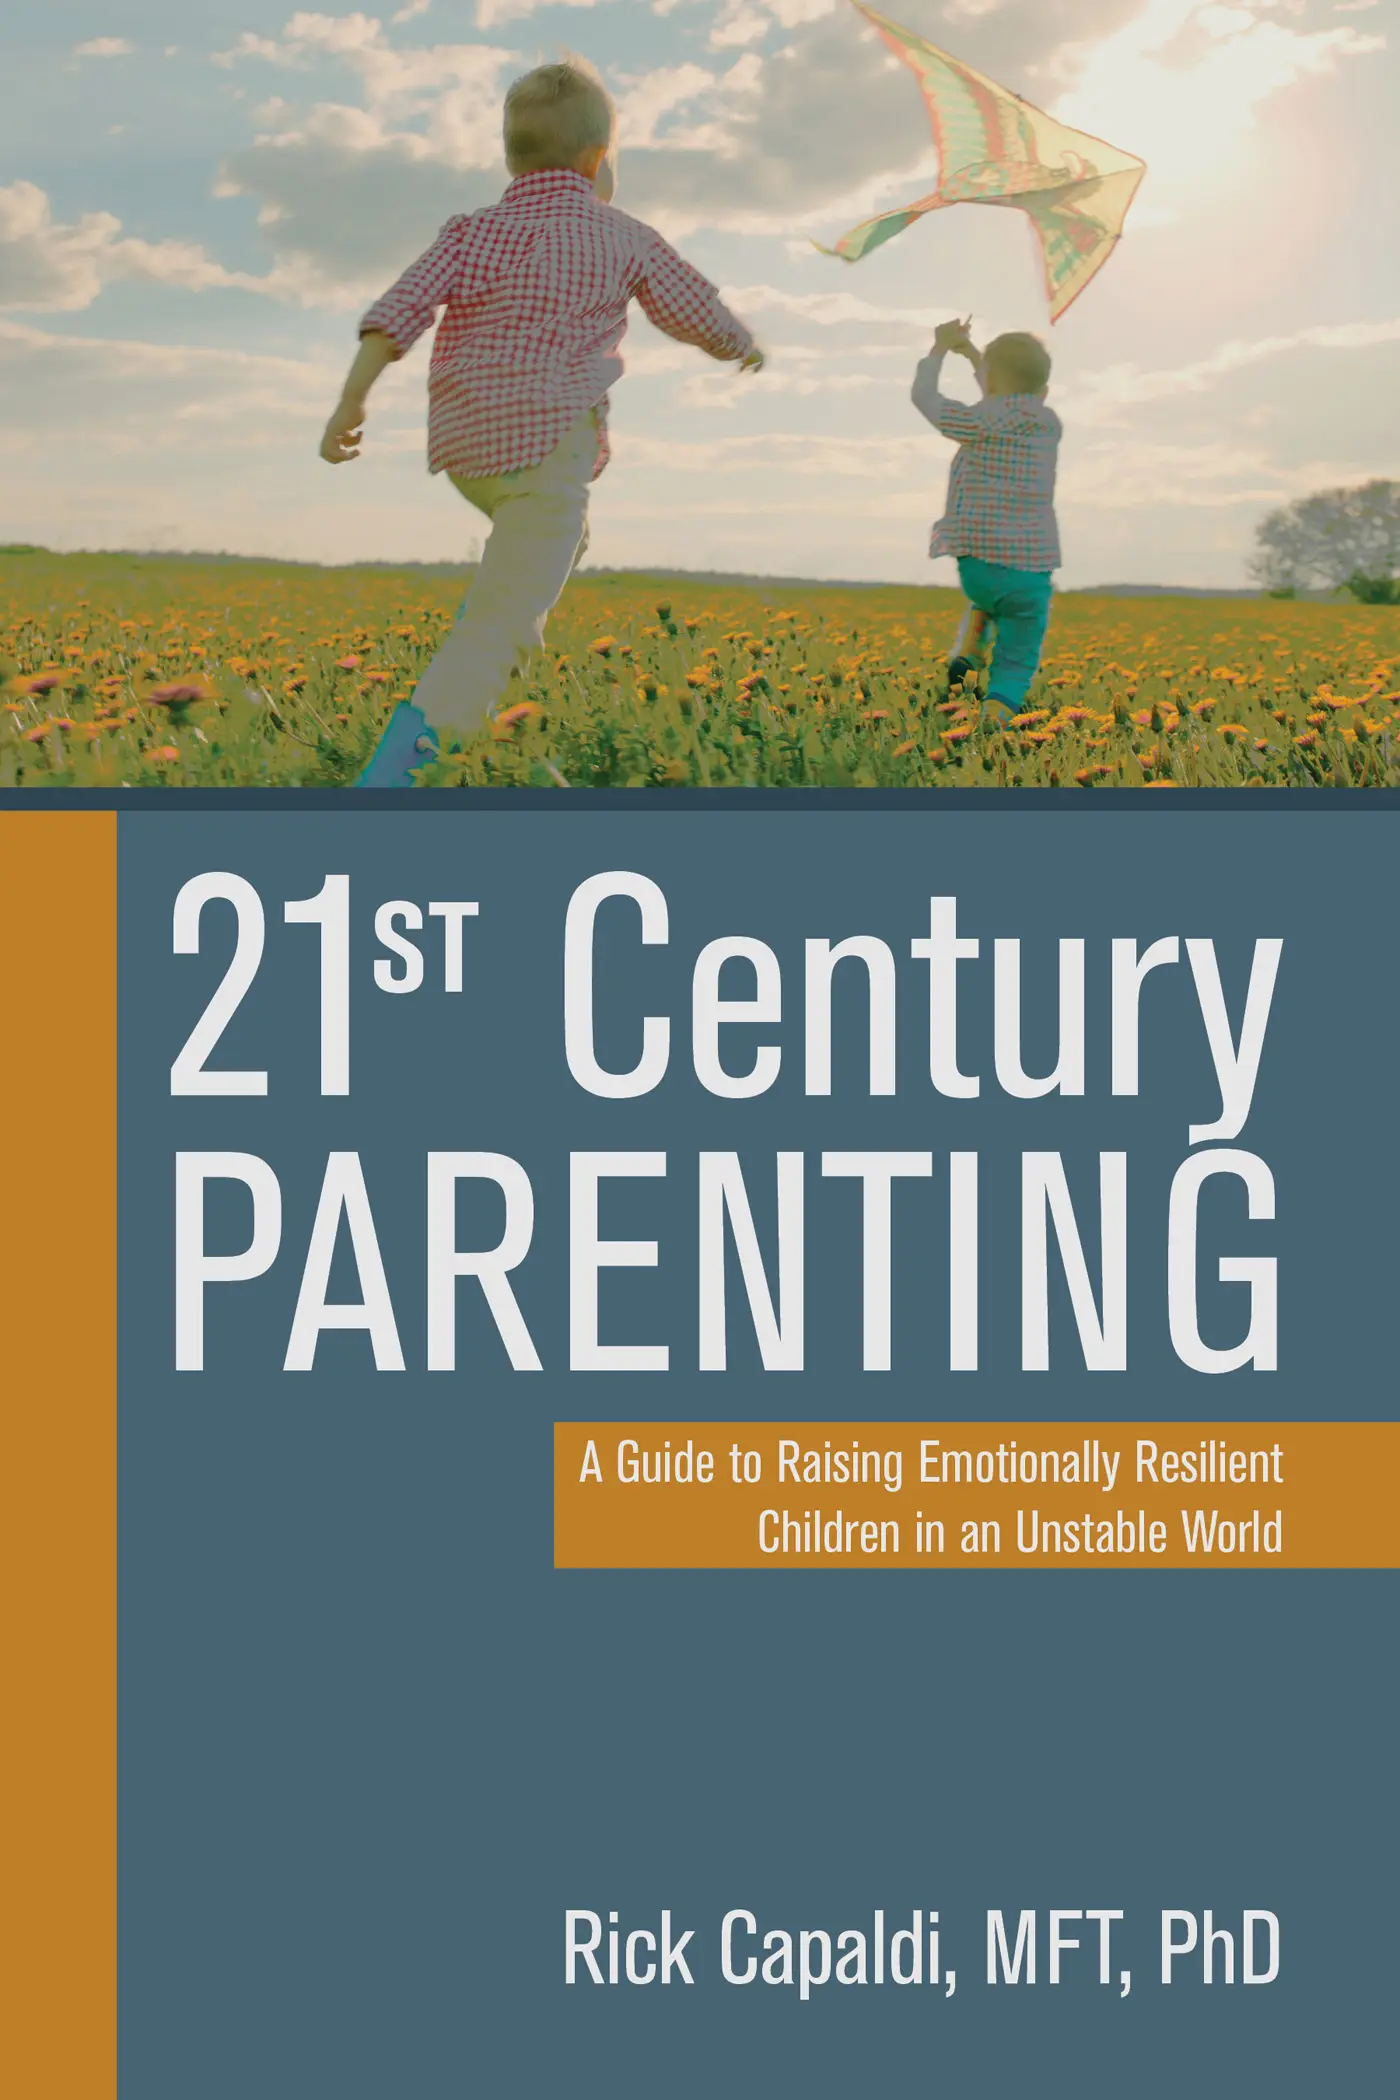 parenting in the 21st century essay